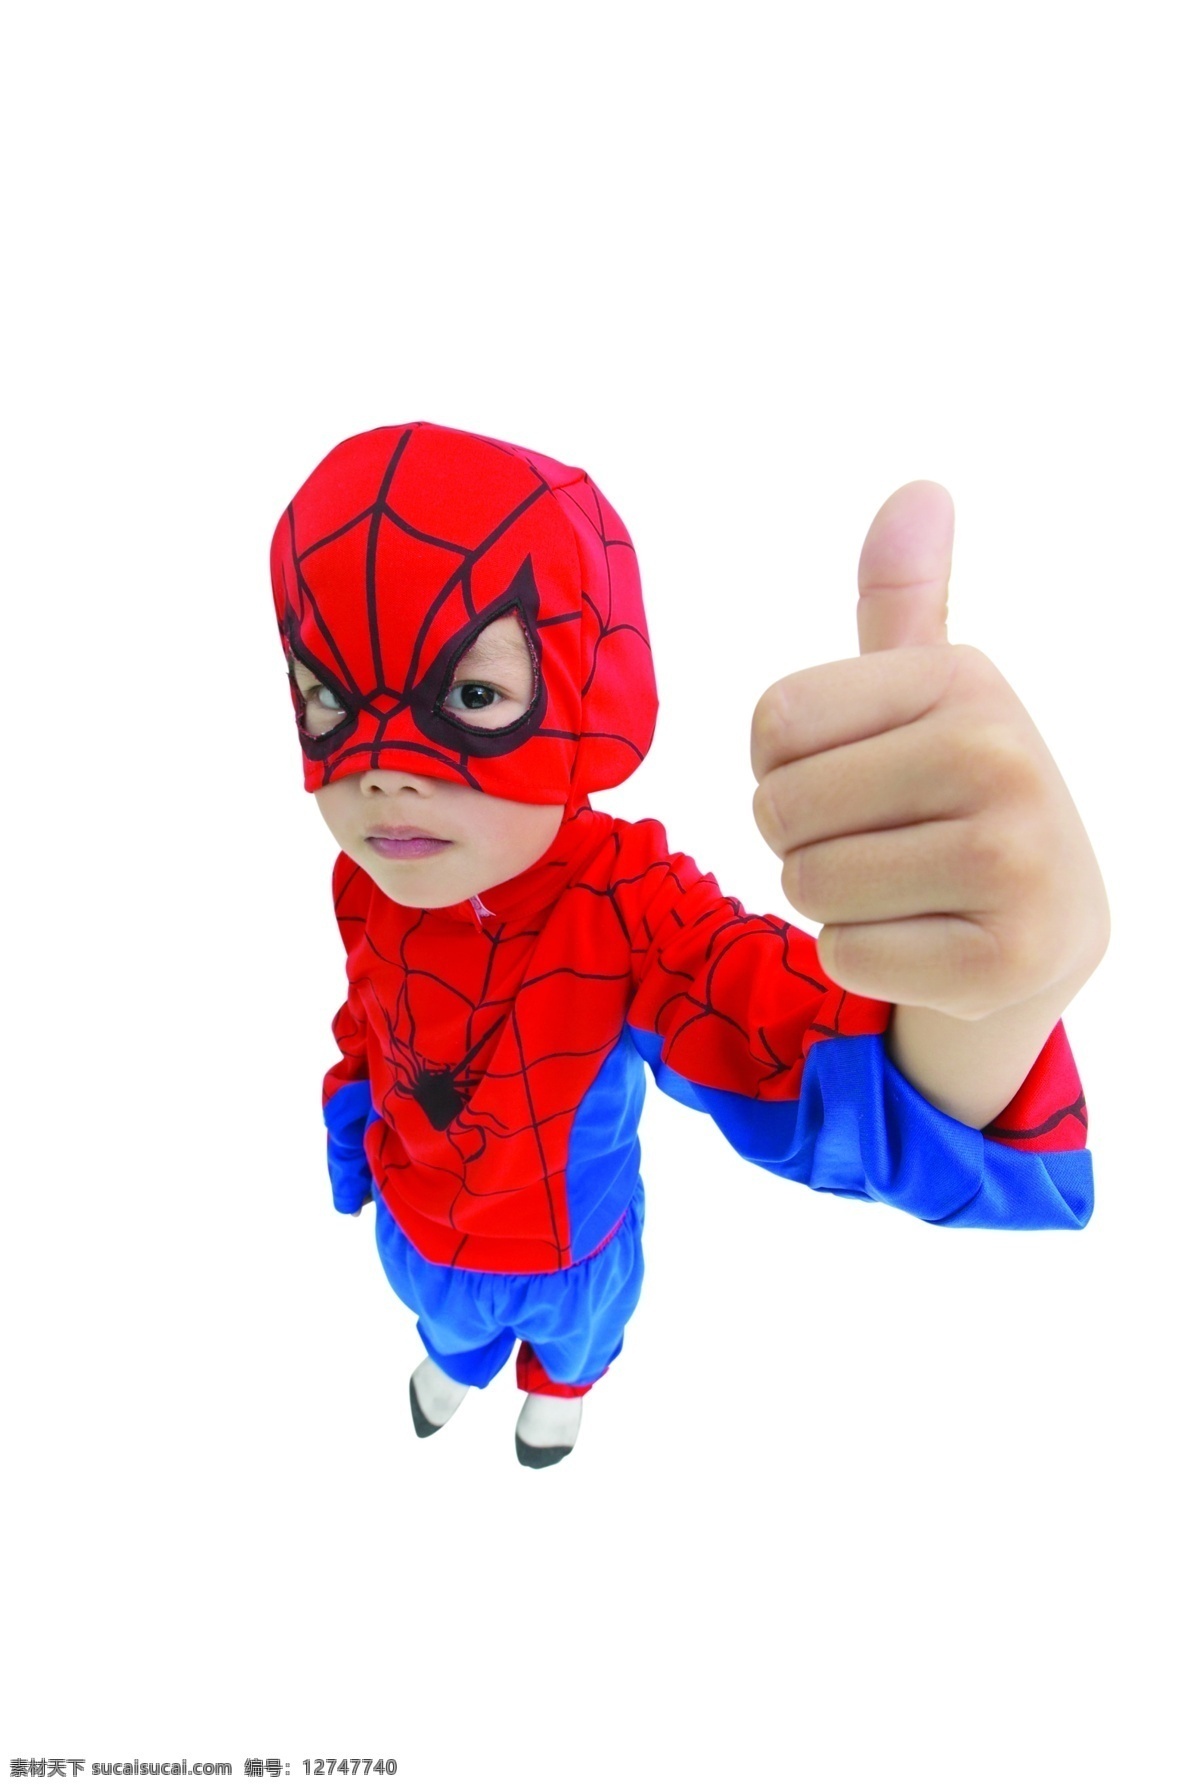 蜘蛛侠 人物 小孩 装扮 举手 最棒 人物图库 儿童幼儿 摄影图库